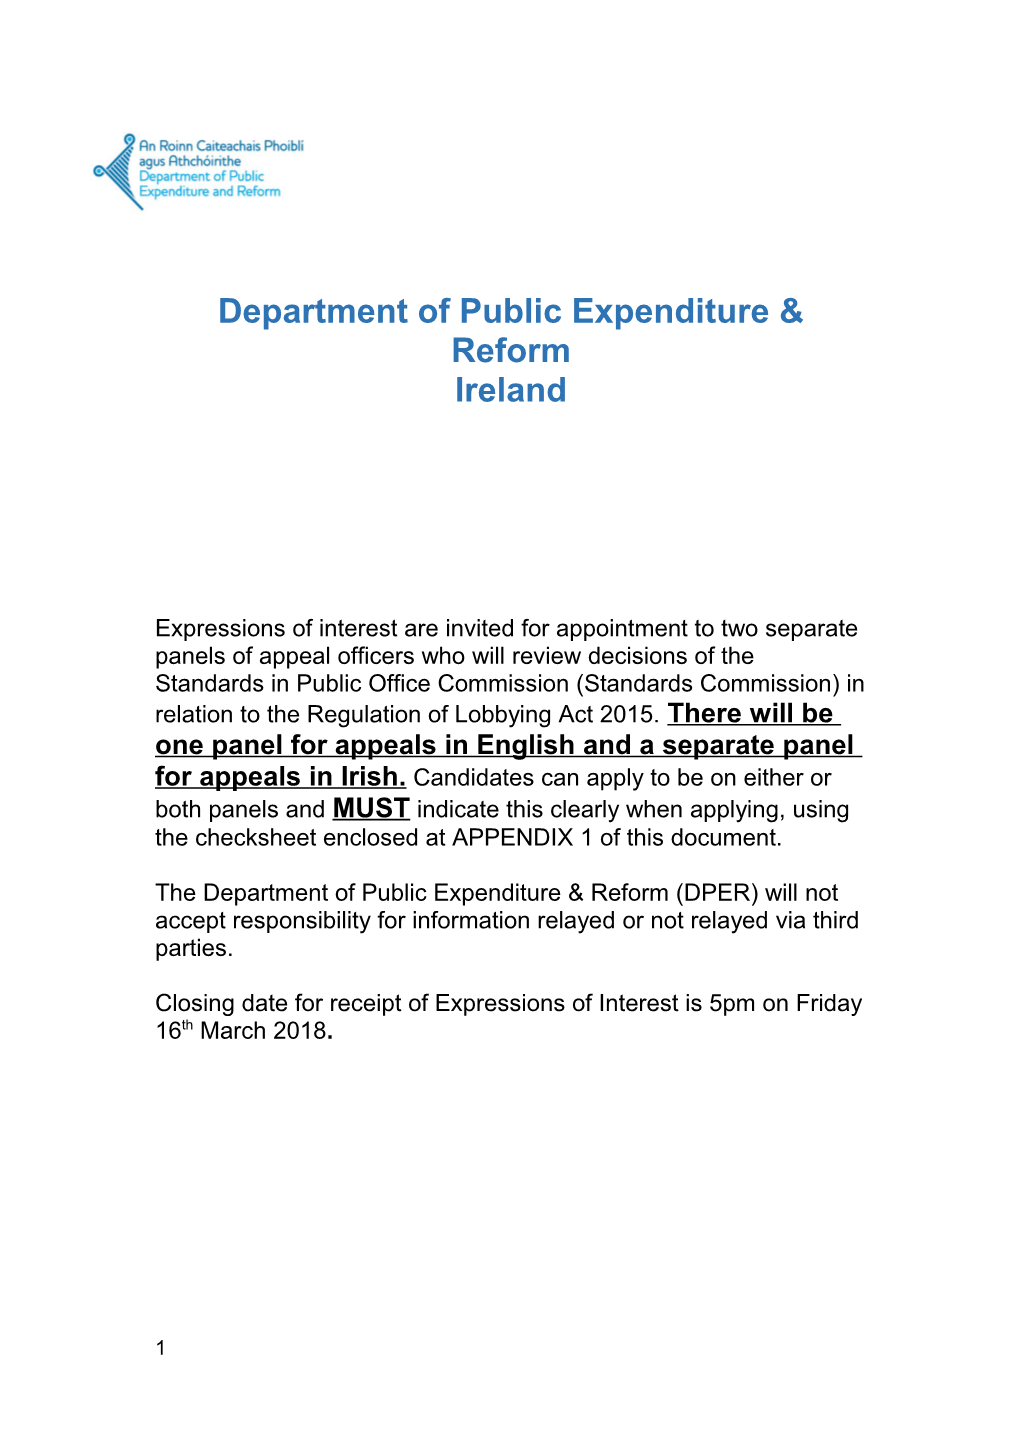 Department of Public Expenditure & Reform